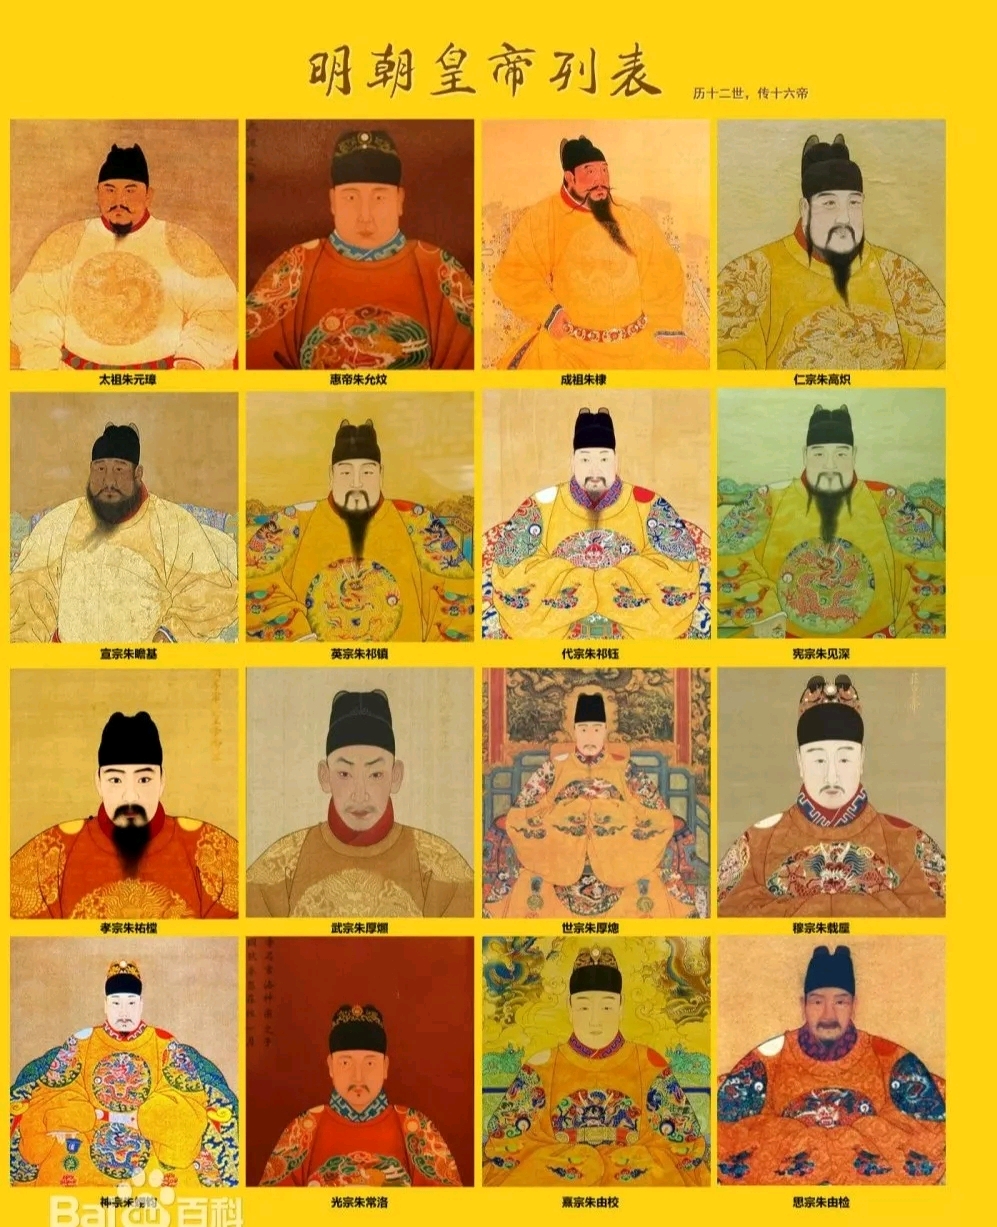 我们将明朝16位皇帝画像放在一起,很明显可以看出,老朱家的人,国字脸